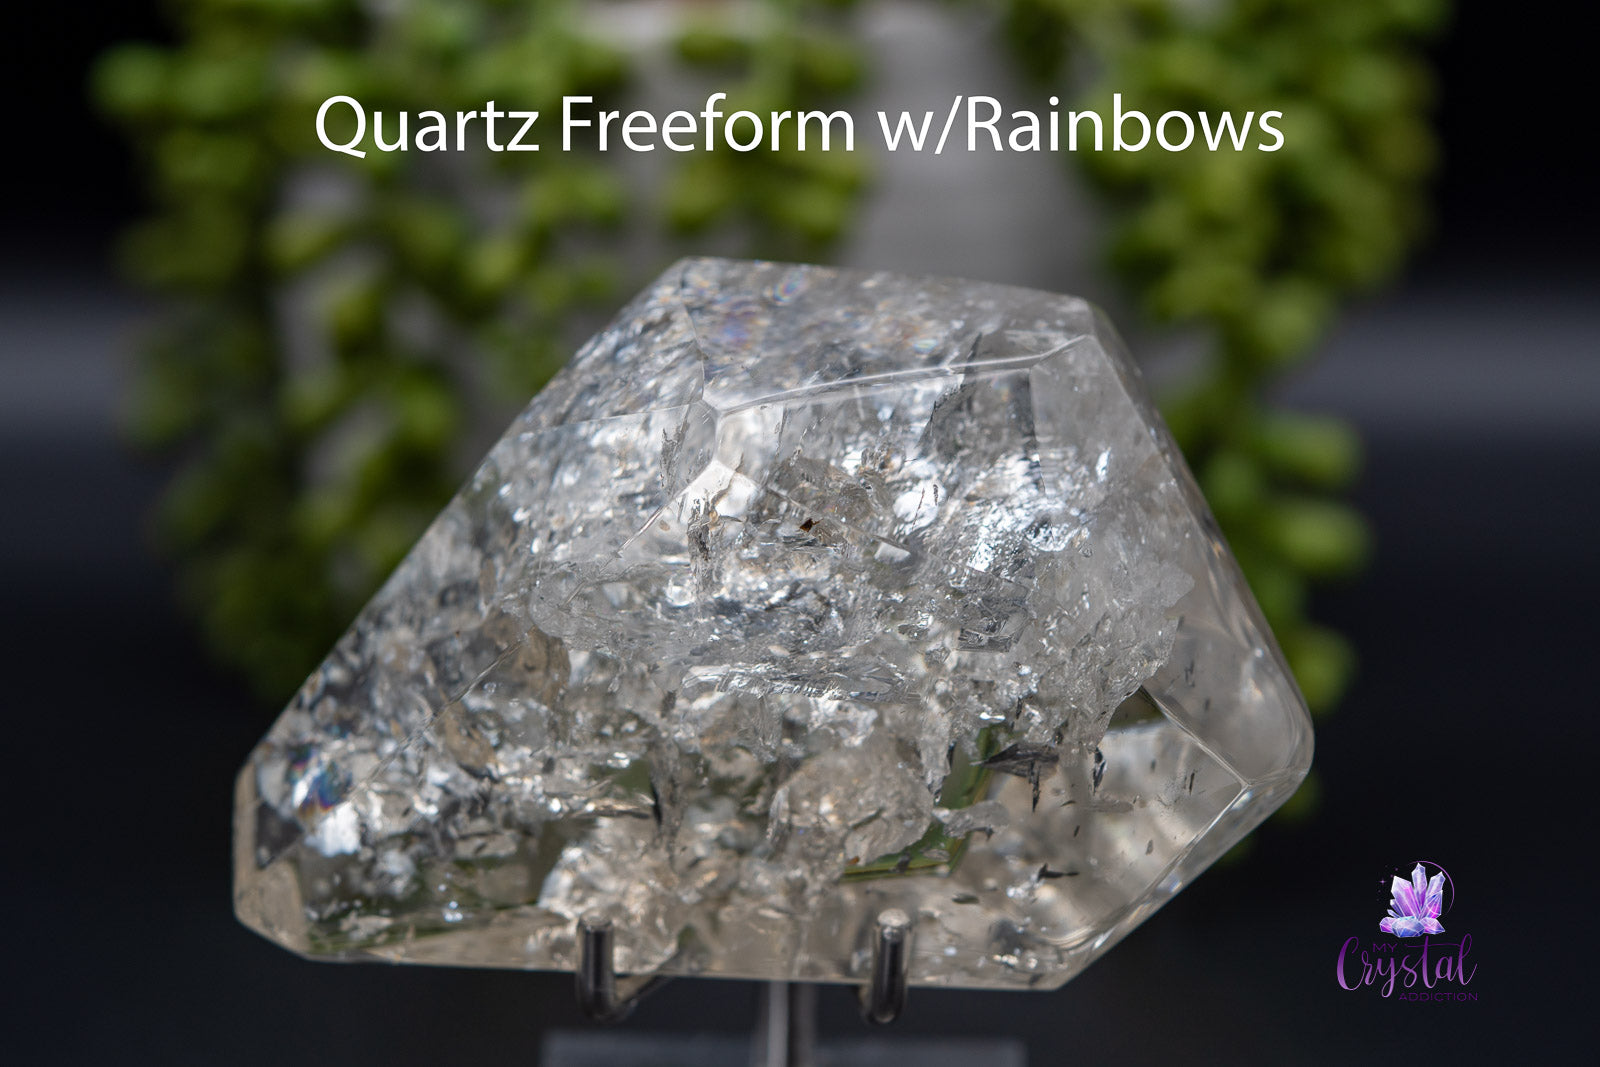 Quartz Freeform w/Rainbows 4.9" x 2.9"/124mm x 73mm - My Crystal Addiction